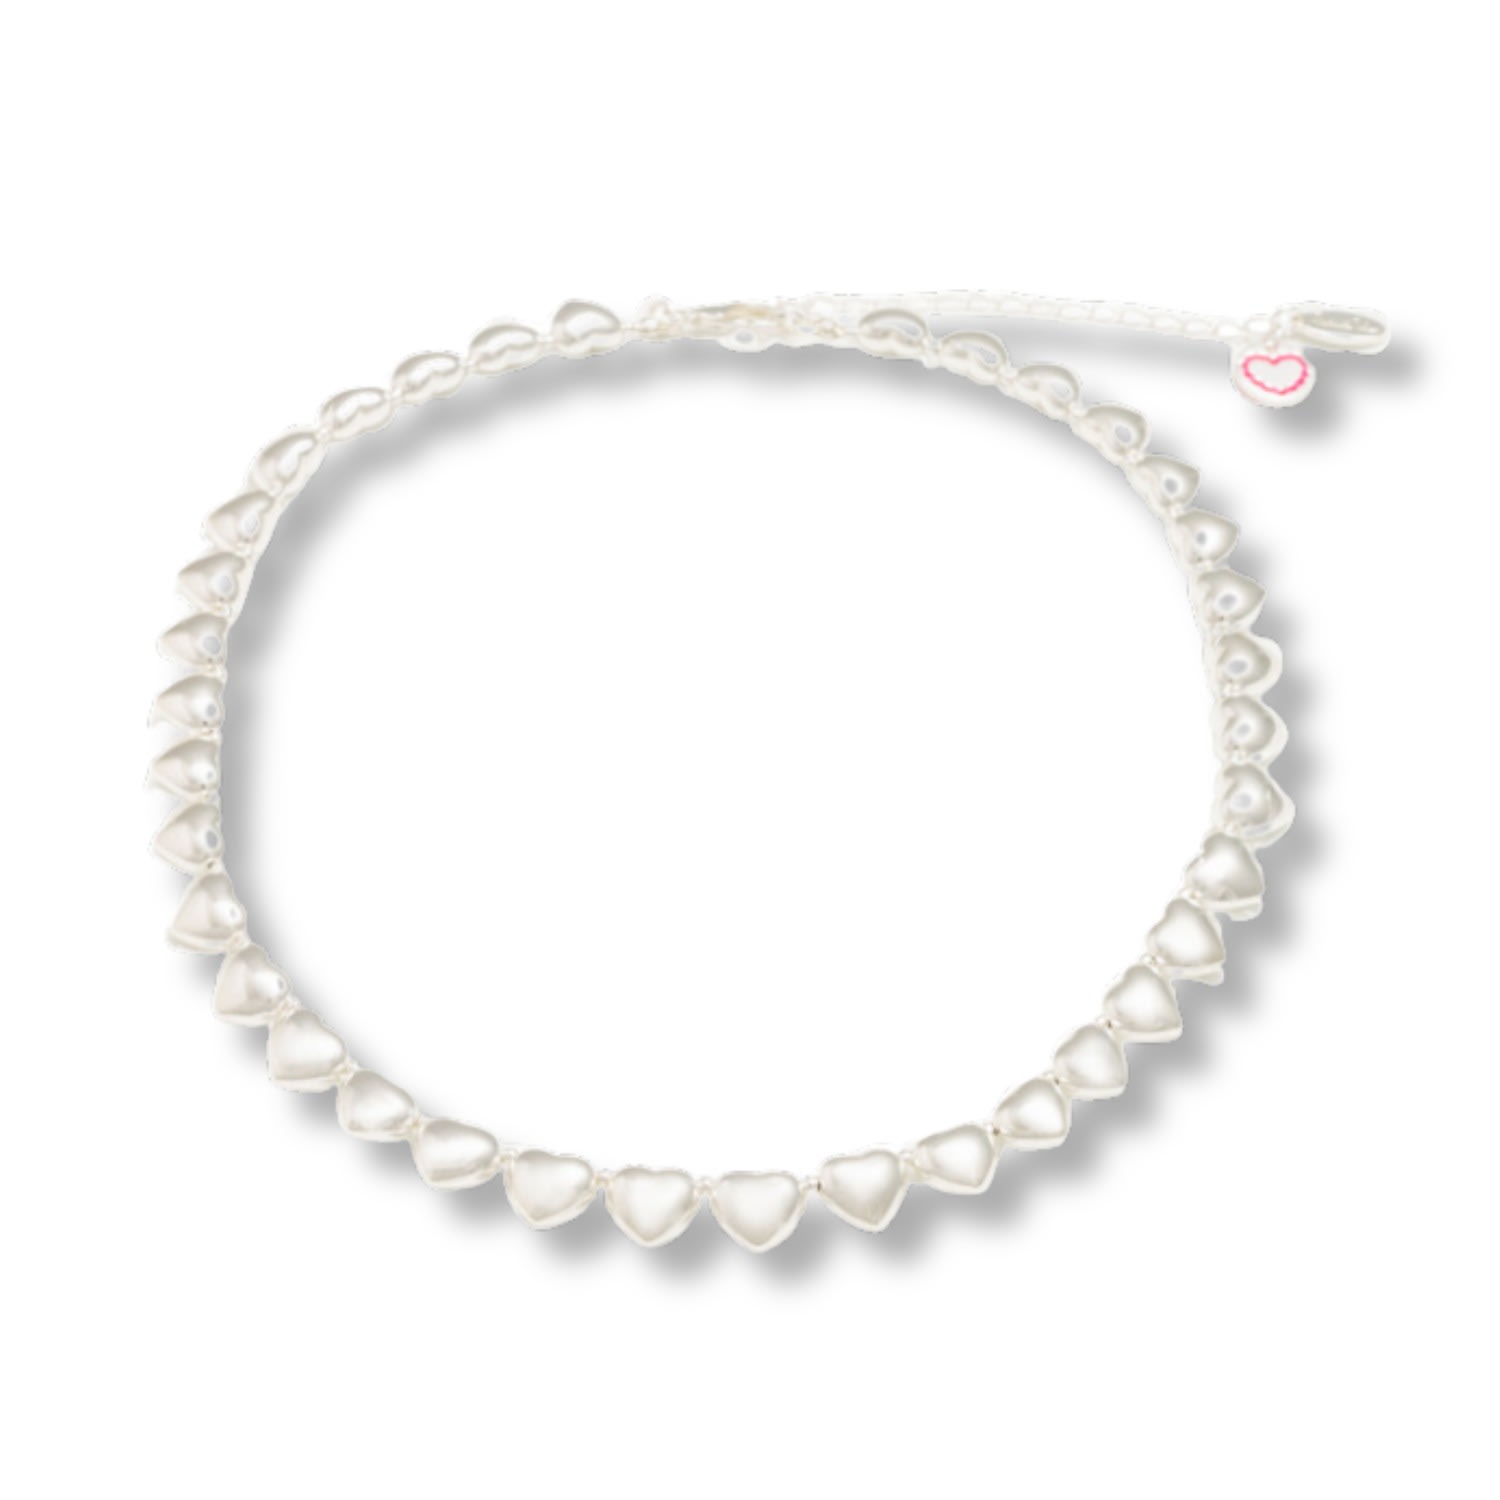 Mademoiselle Jules Women's Heartbreaker Necklace - Silver